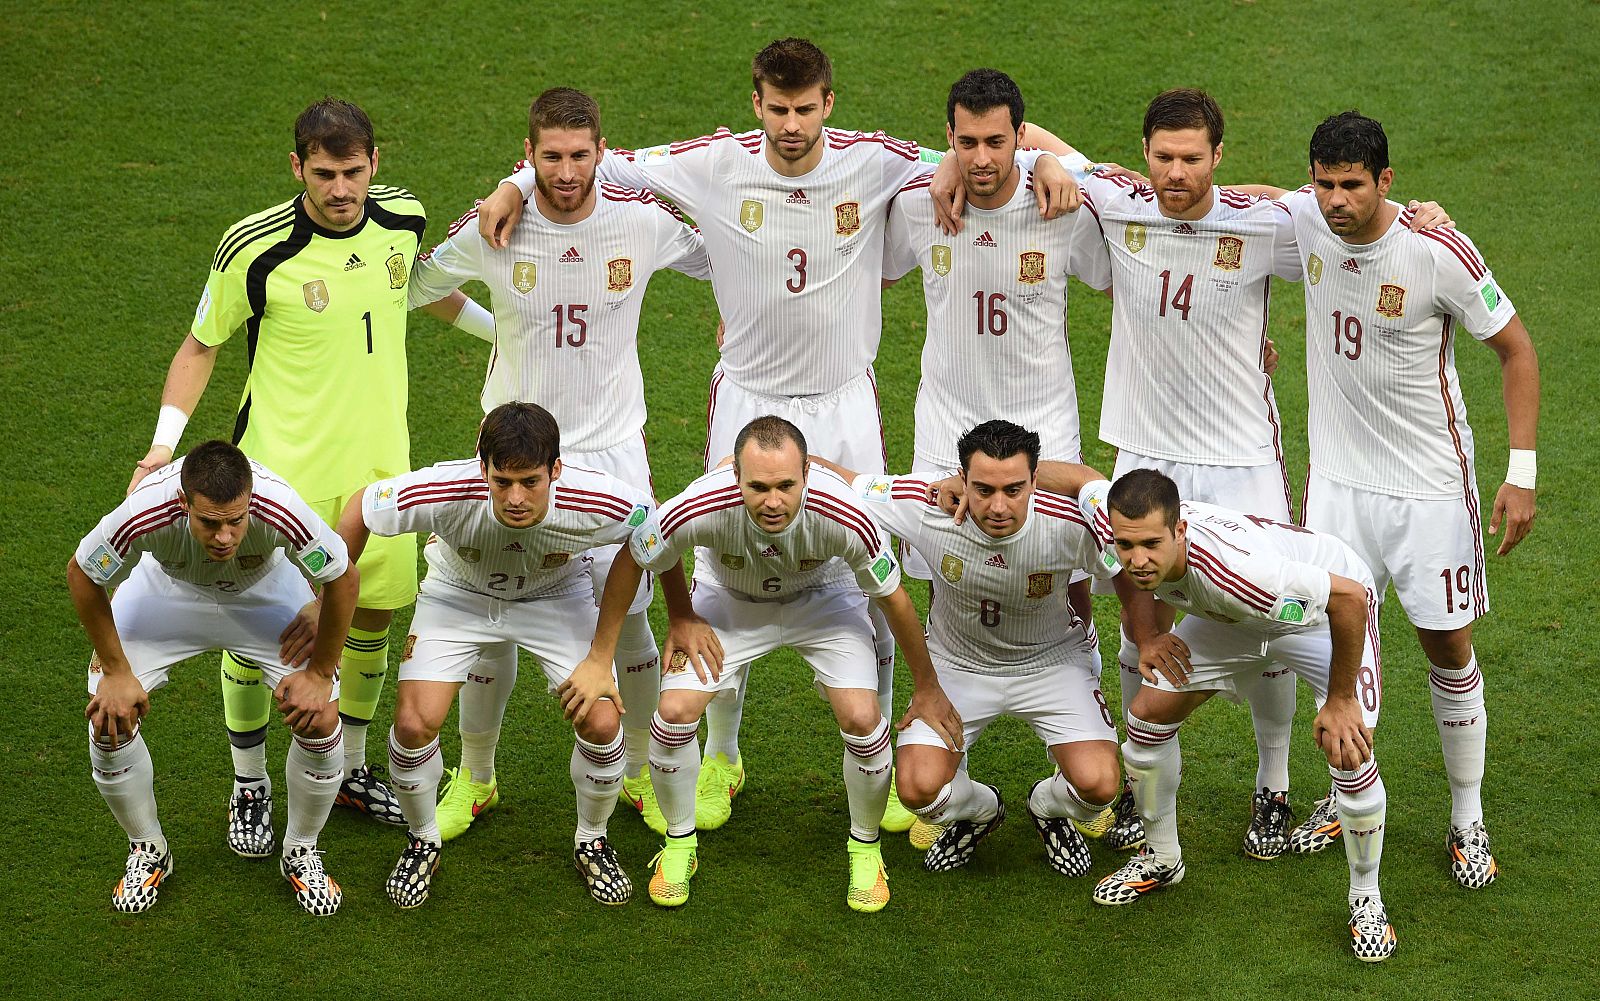 El once inicial de la selección española, justo antes de comenzar el encuentro contra Holanda.